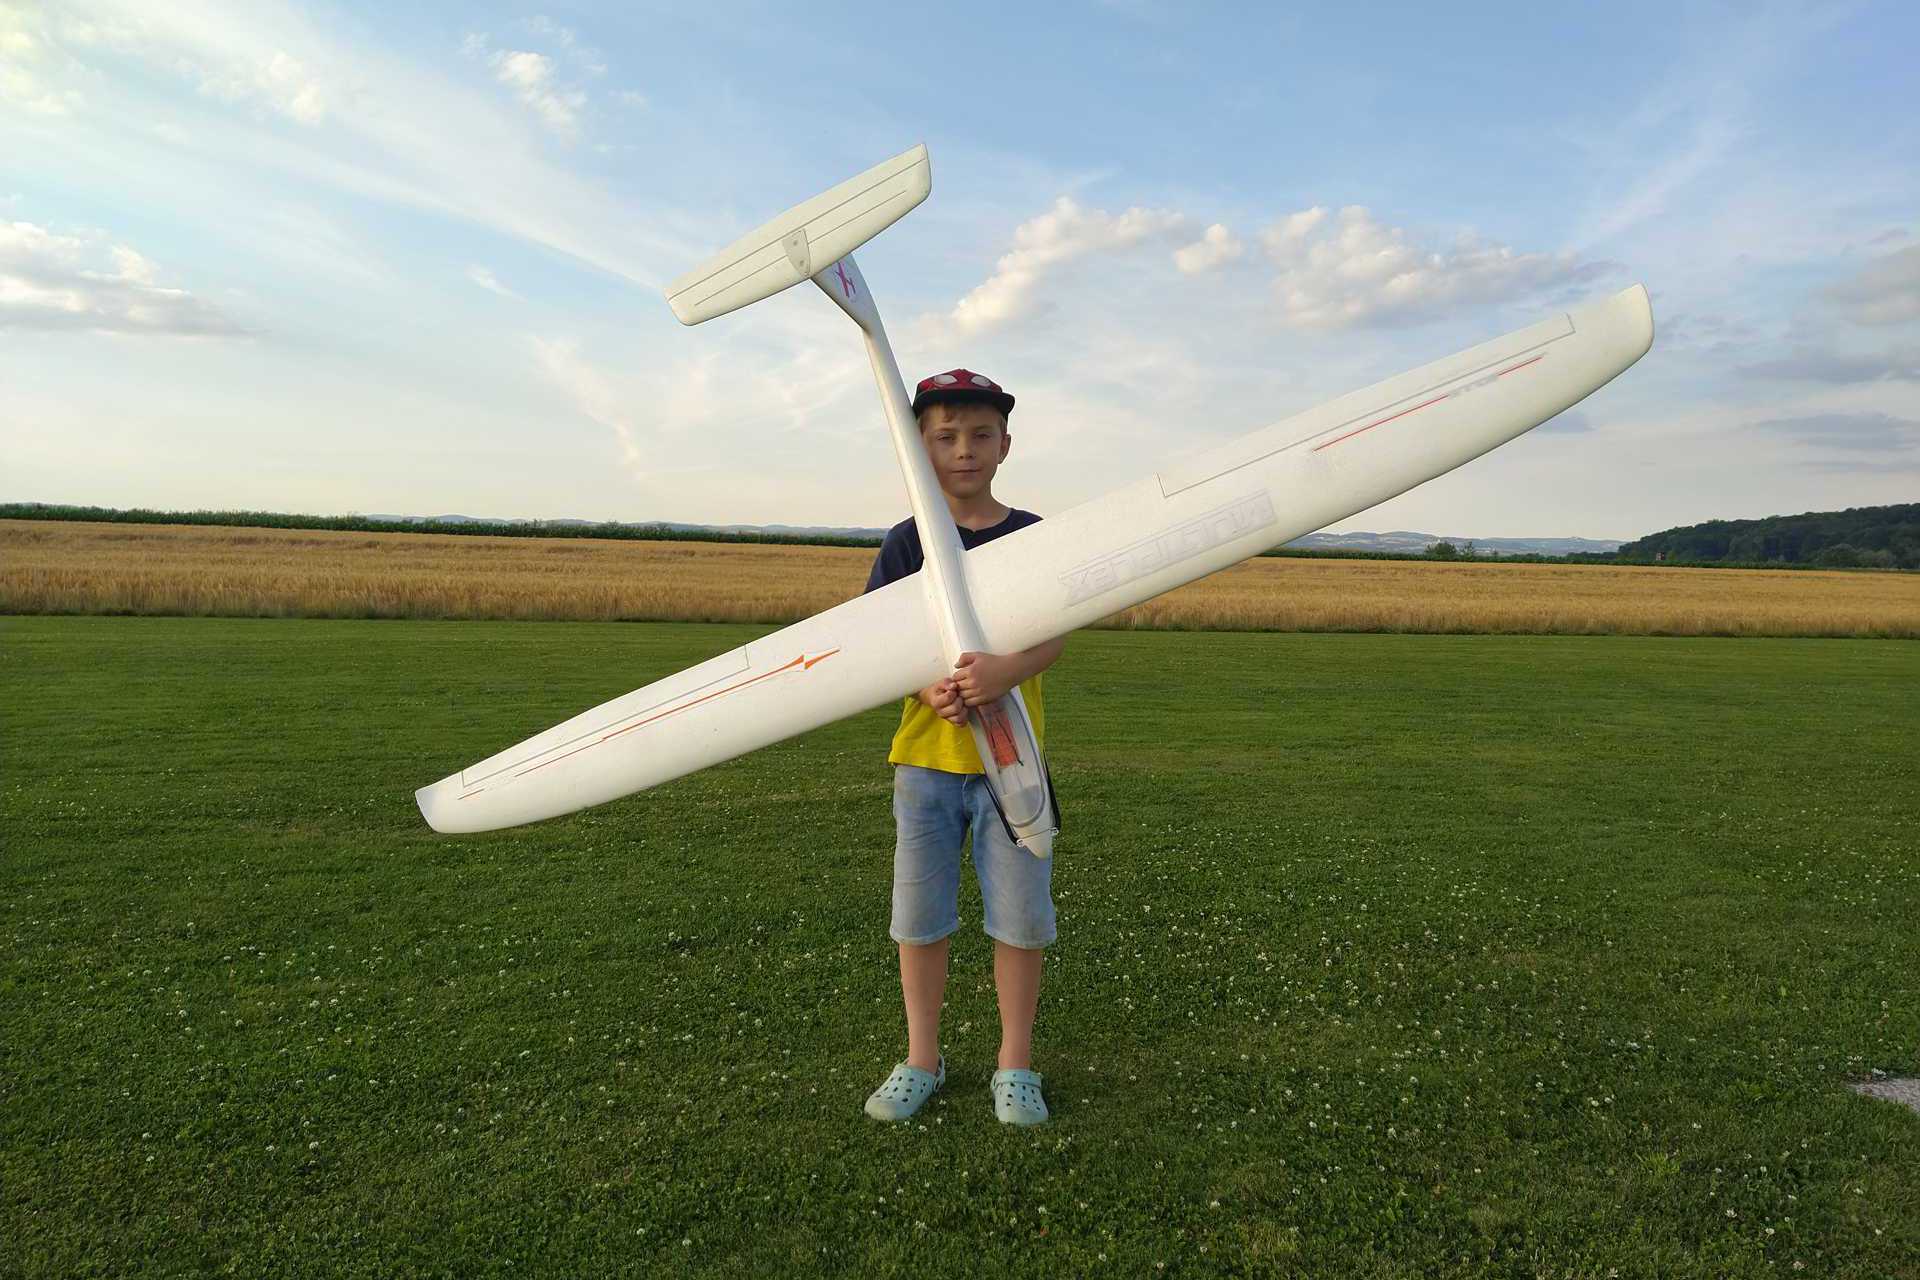 Foto: 7 jähriges Kind mit Modellsegelflugzeug (vergrößerte Ansicht)